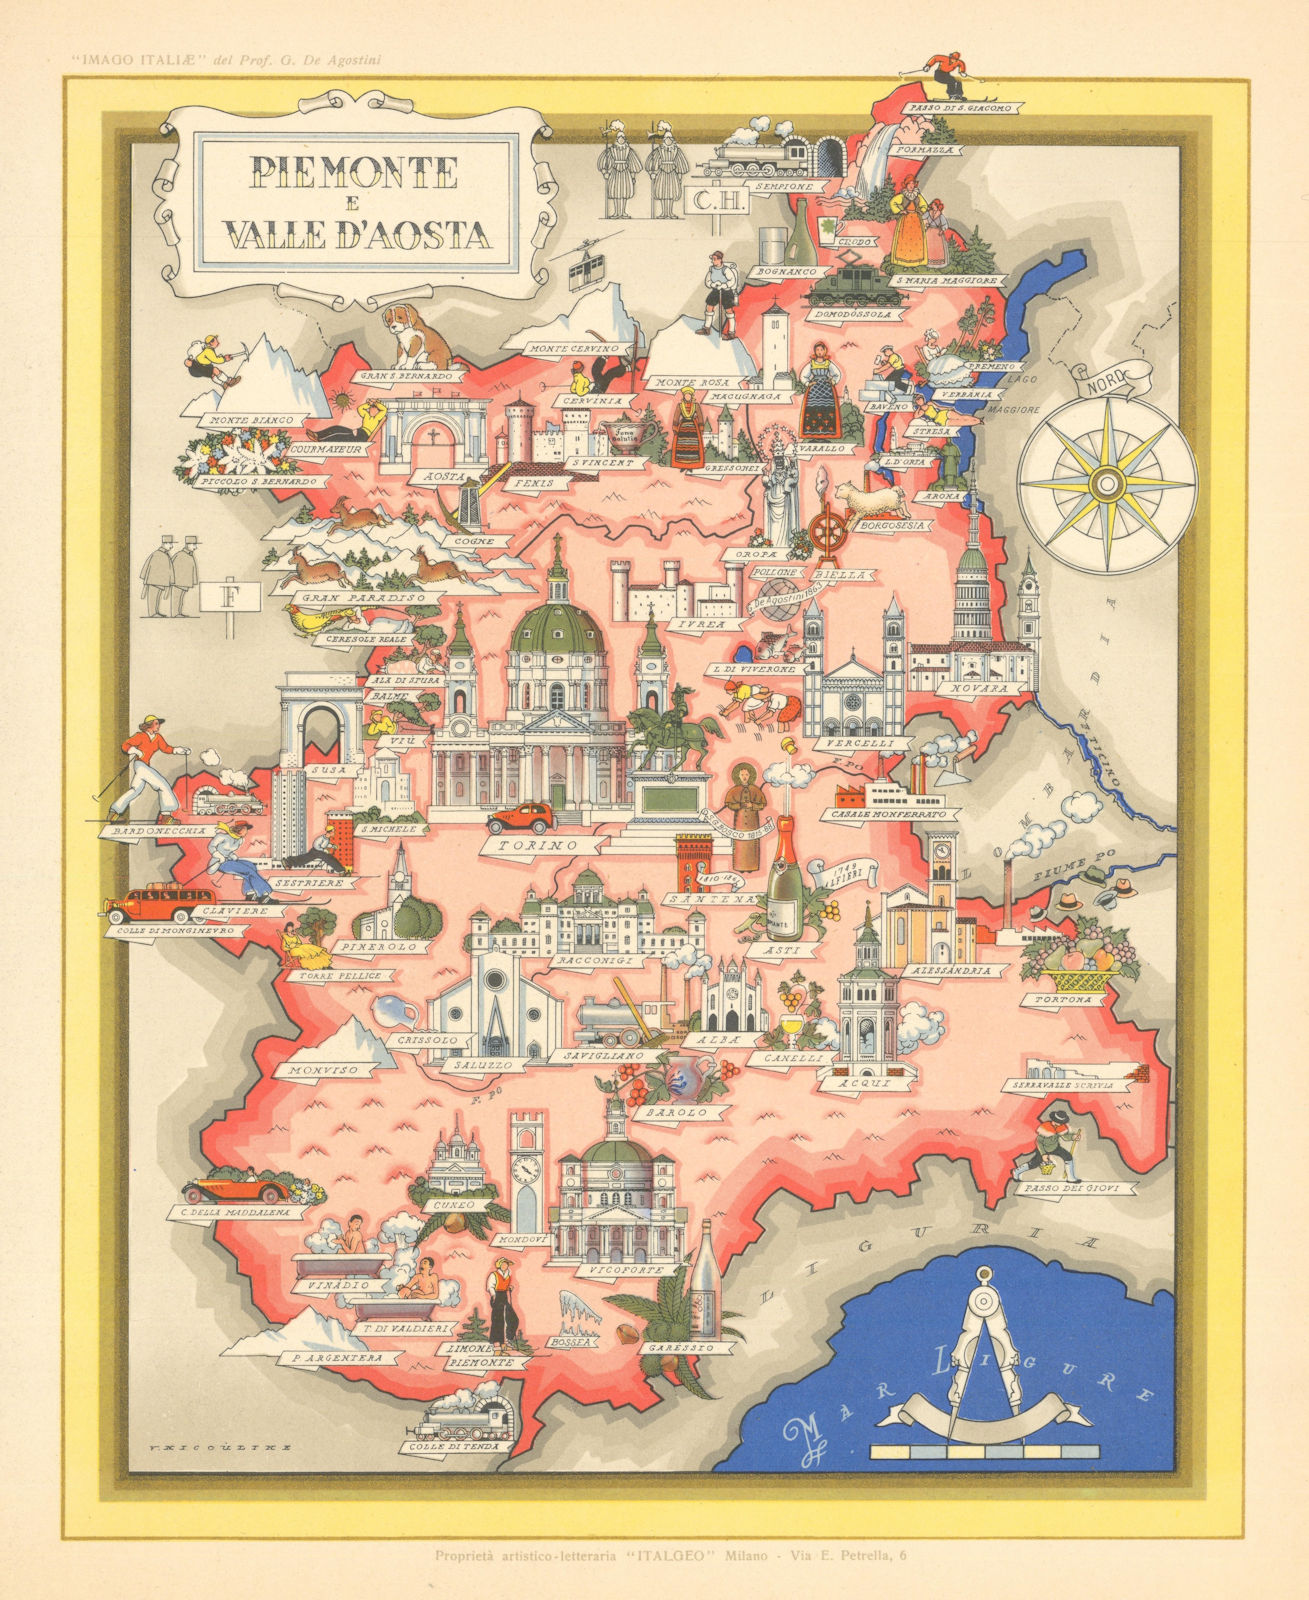 Piemonte / Piedmont & Aosta pictorial map by Vsevolode Nicouline. Italgeo c1950